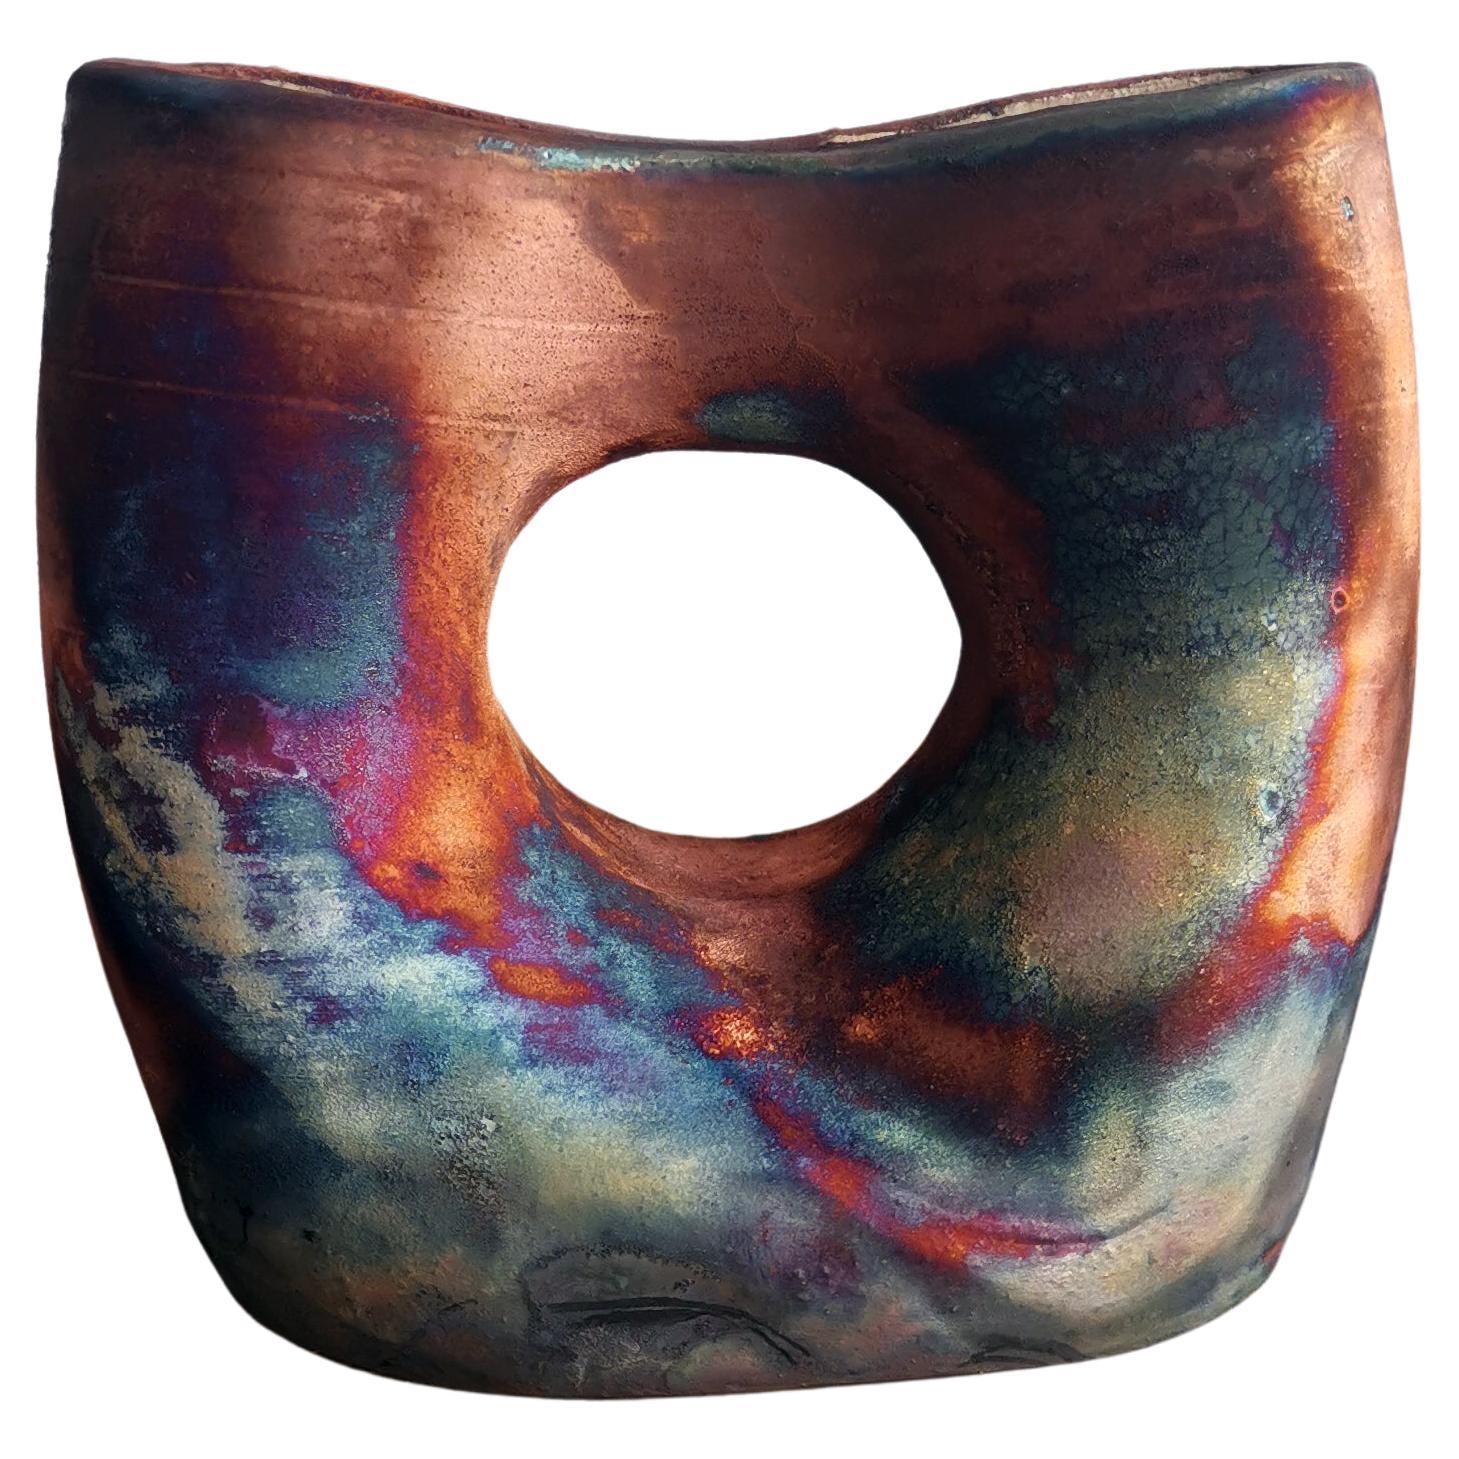 Dokutsu Raku Fired Pottery Vase - Full Copper Matte -Handmade Ceramic Home Decor For Sale